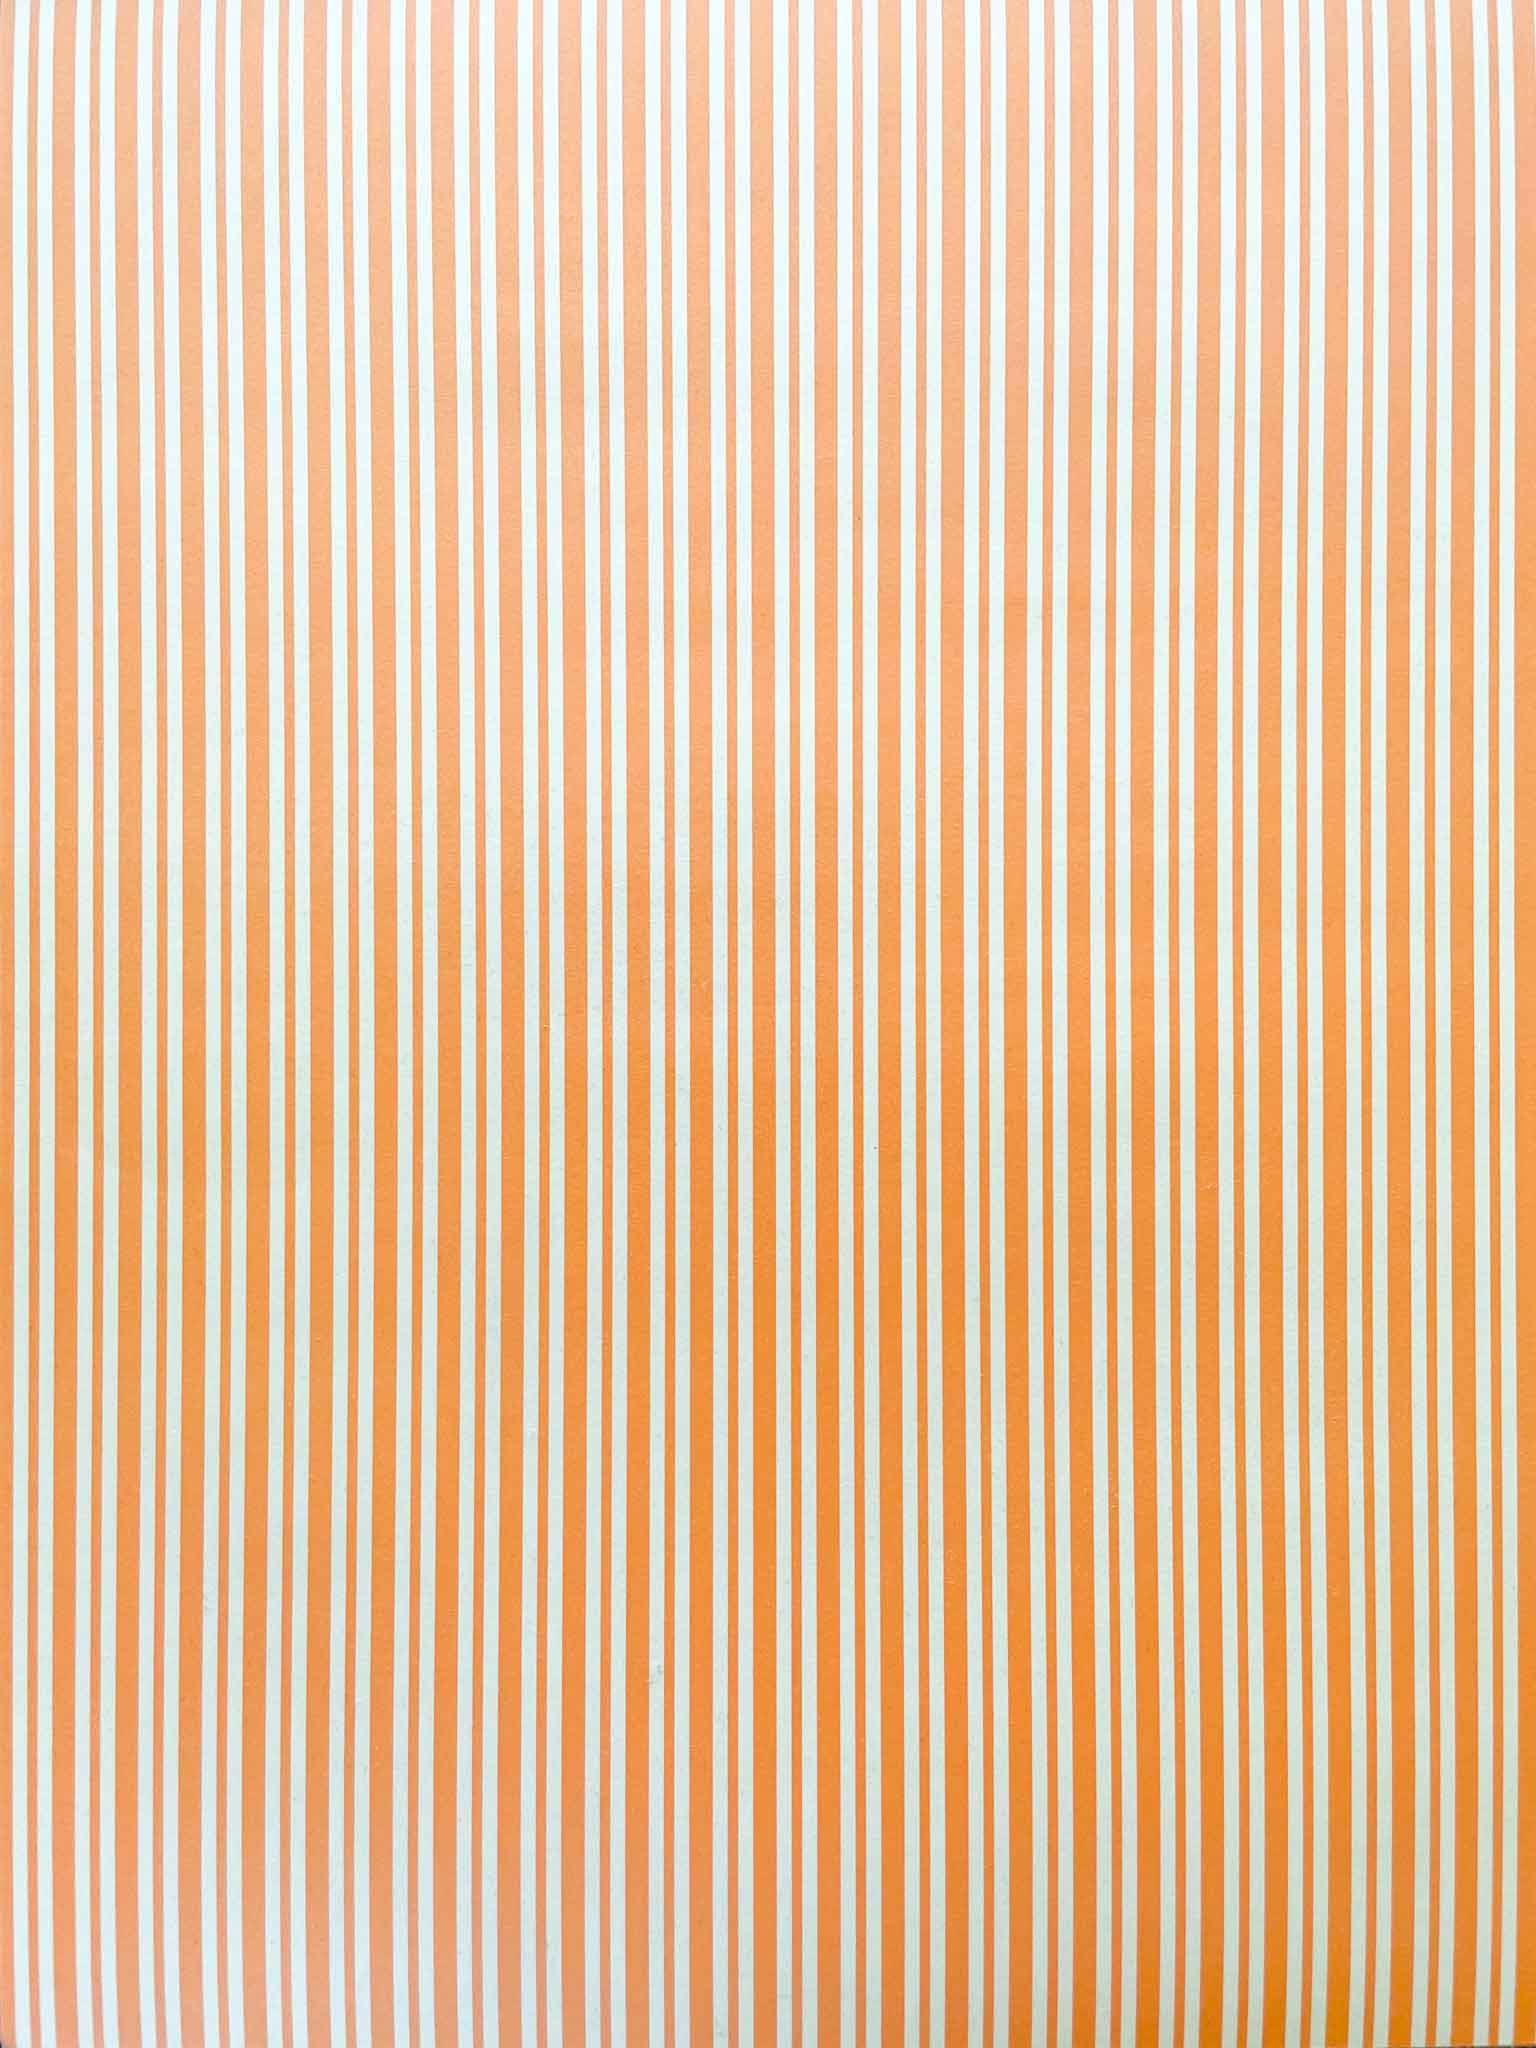 orange-and-white-stripe-paper